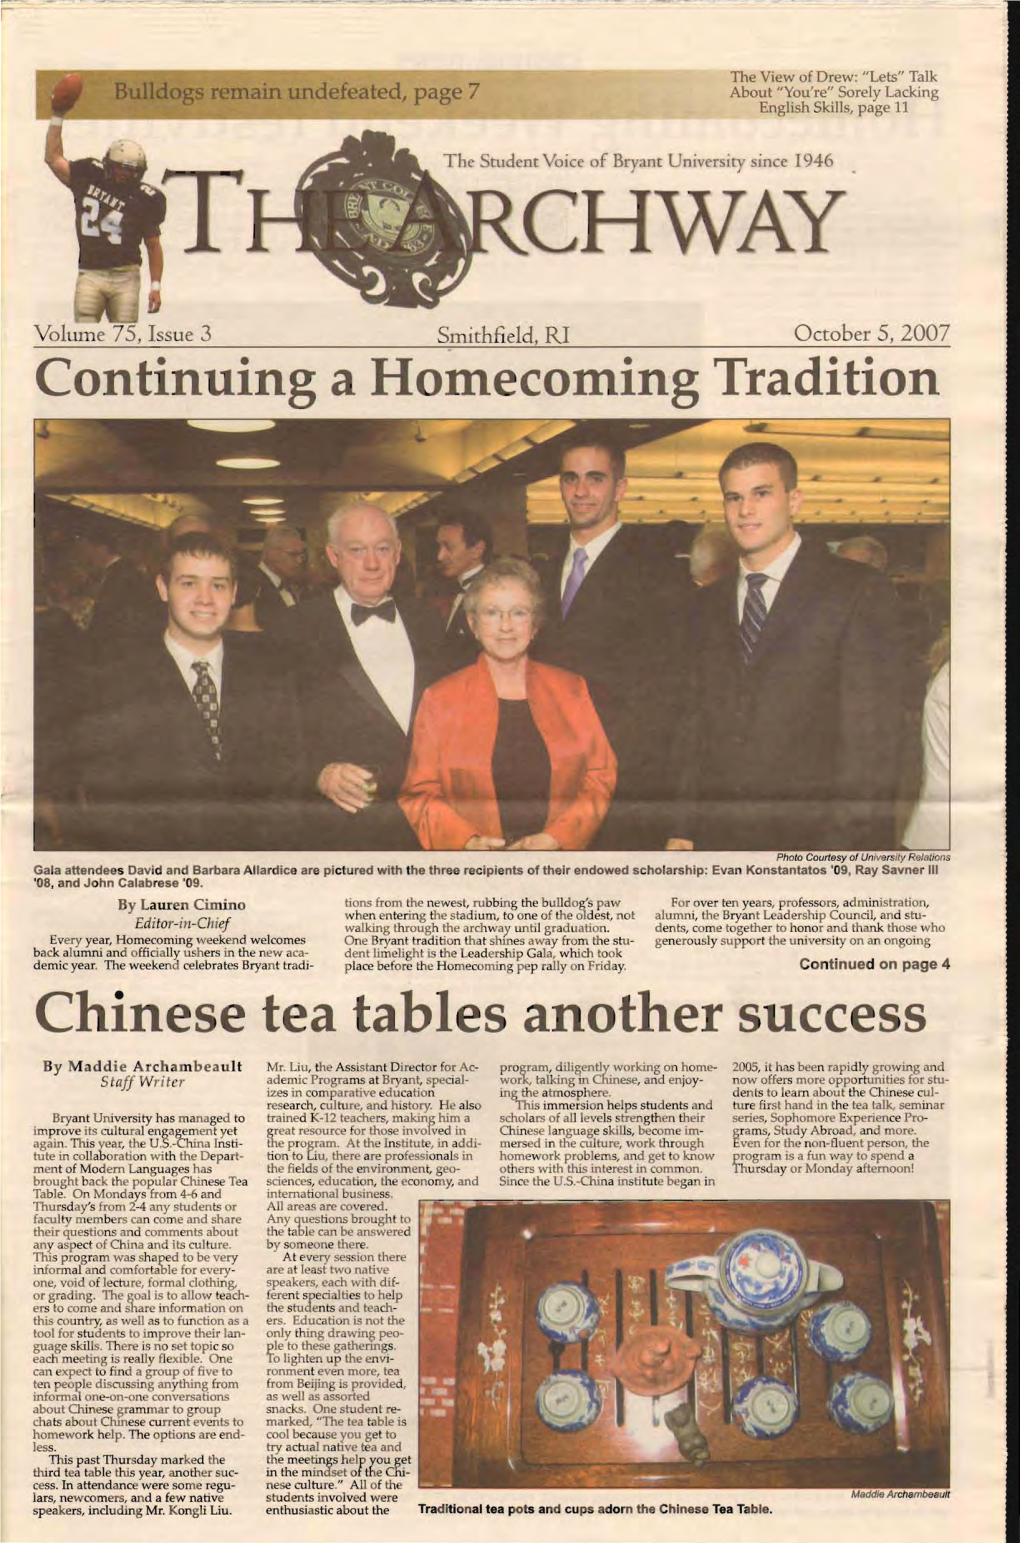 V. 75, Issue 3, October 5, 2007